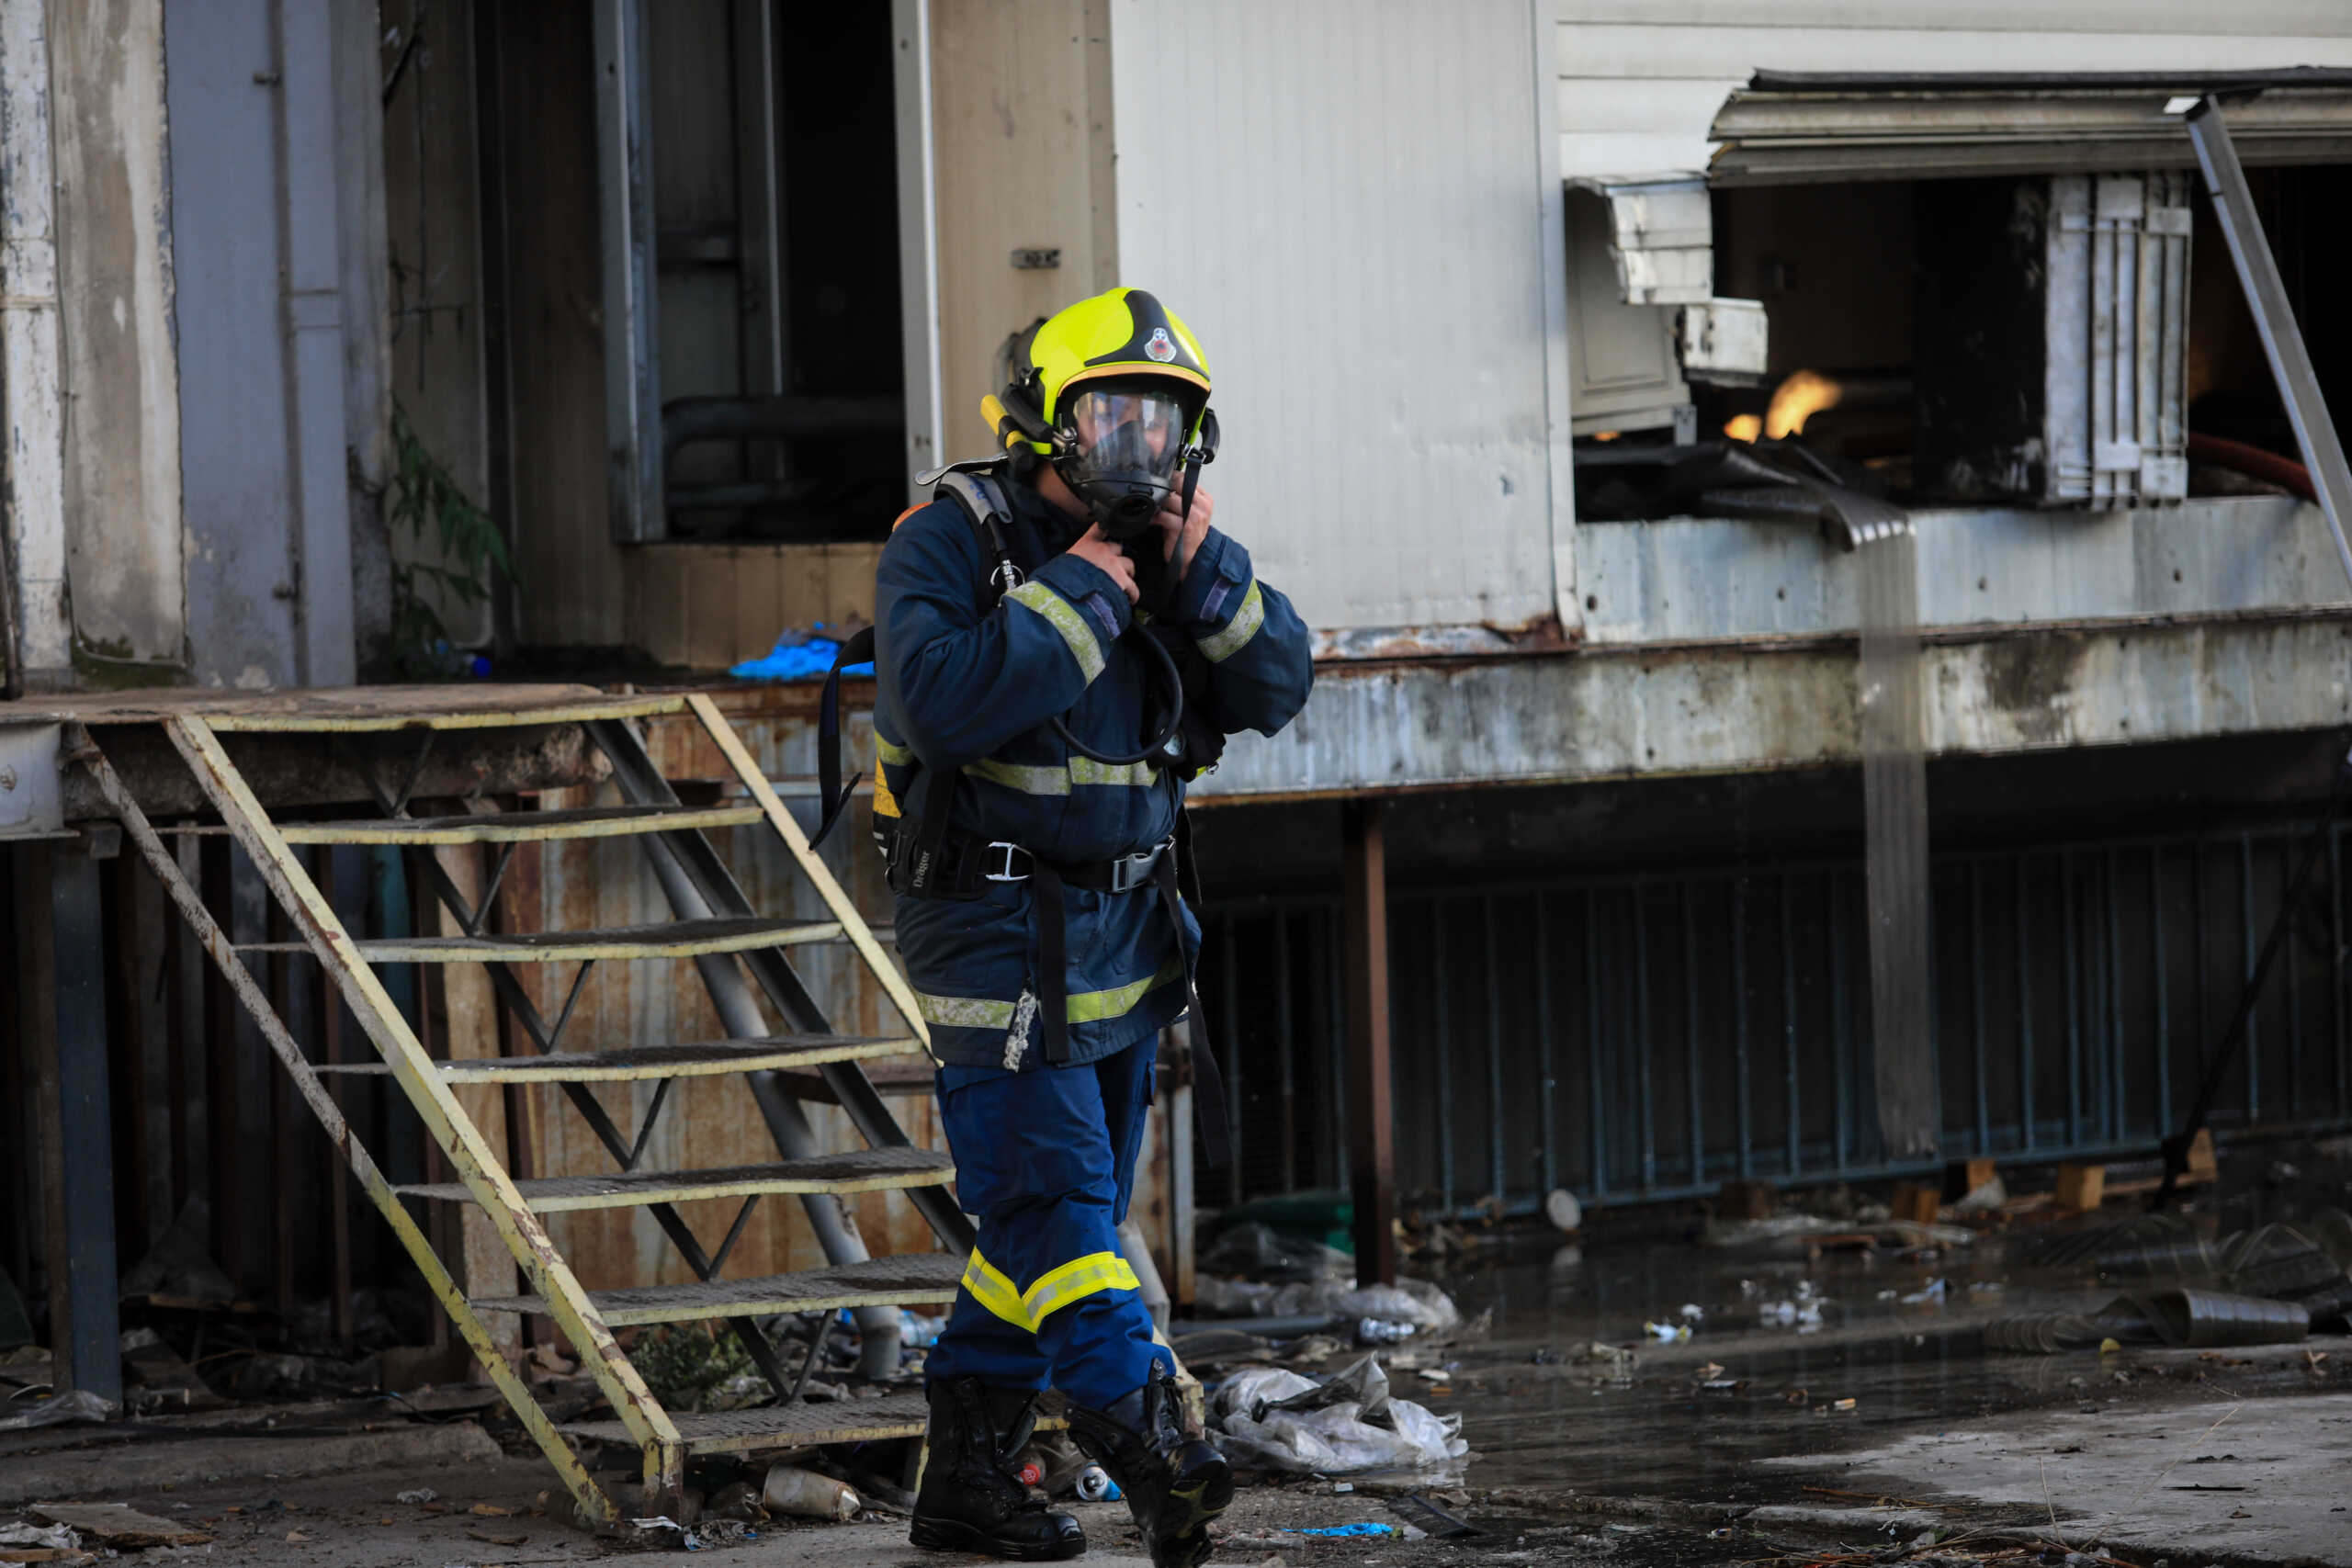 Σέρρες: Φωτιά σε αποθήκη με φιάλες υγραερίου έκαψε τρία τρακτέρ, γεωργικά μηχανήματα και μπάλες από τριφύλλι